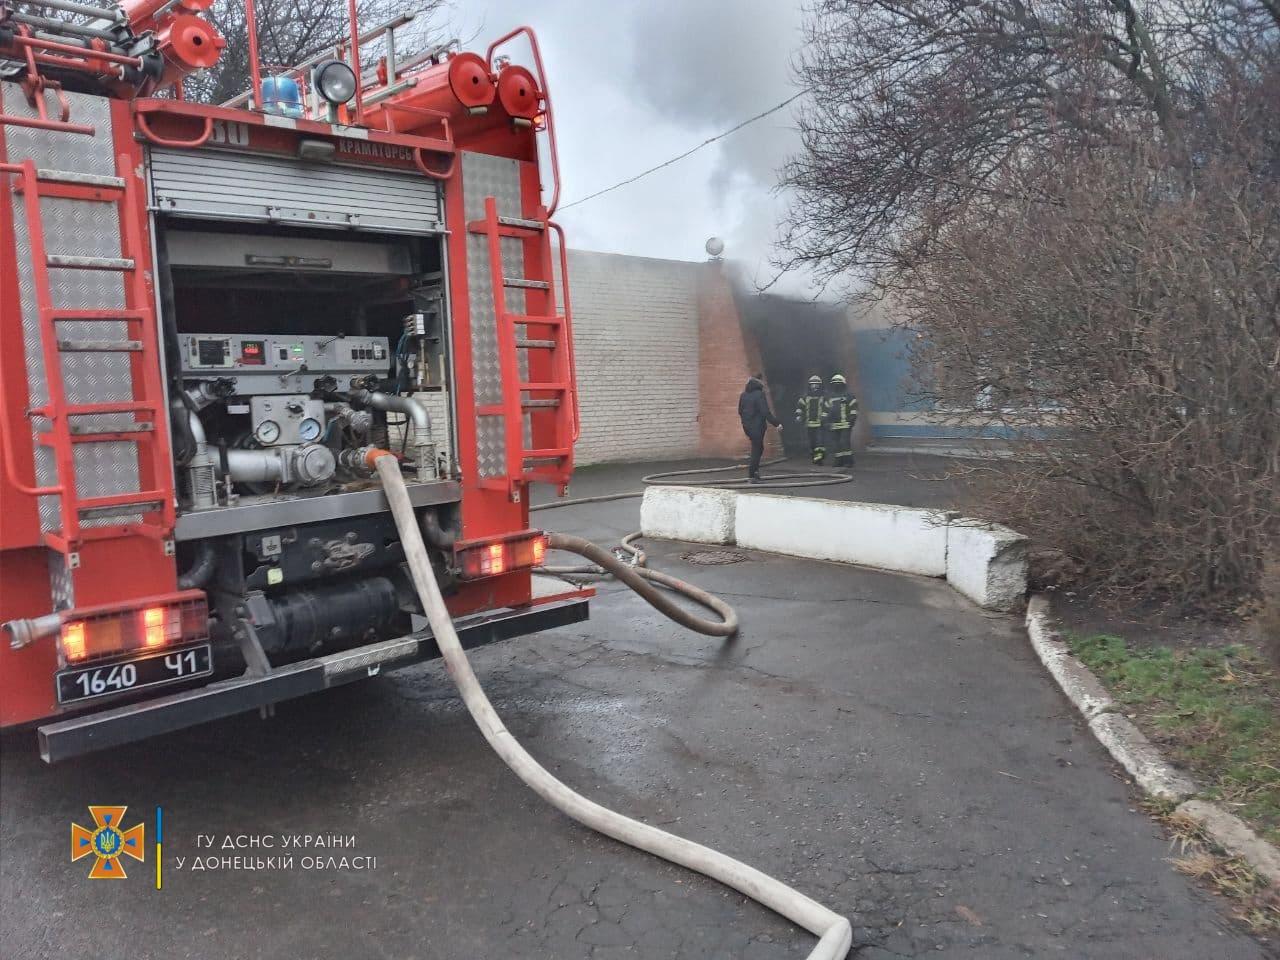 пожарная машина в Донецкой области